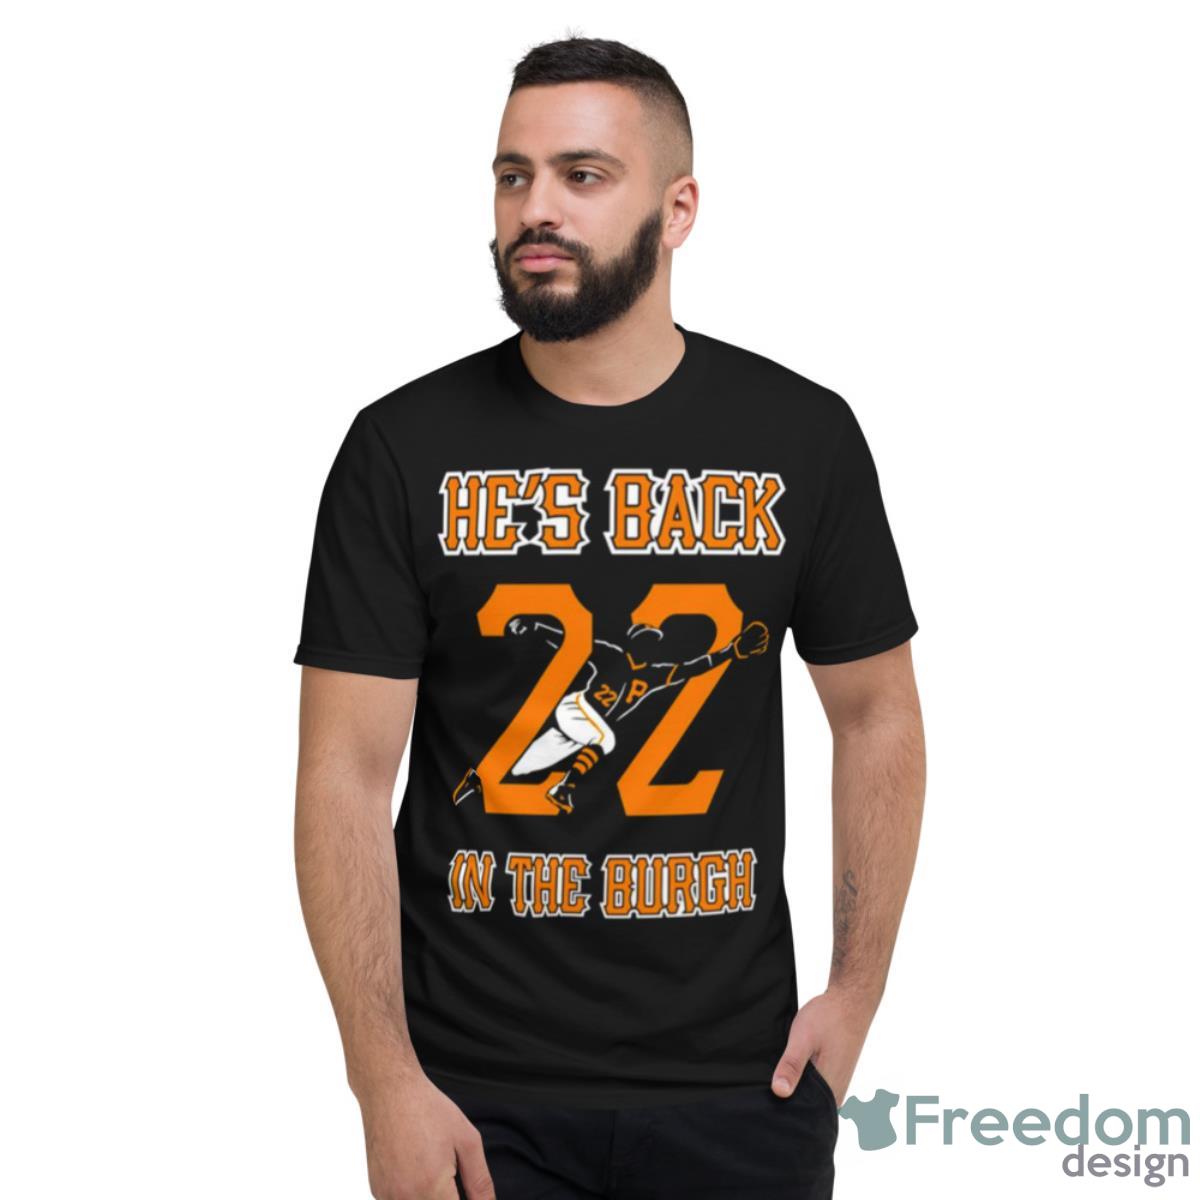 Andrew Davila Number 1 Fan Shirt - Freedomdesign